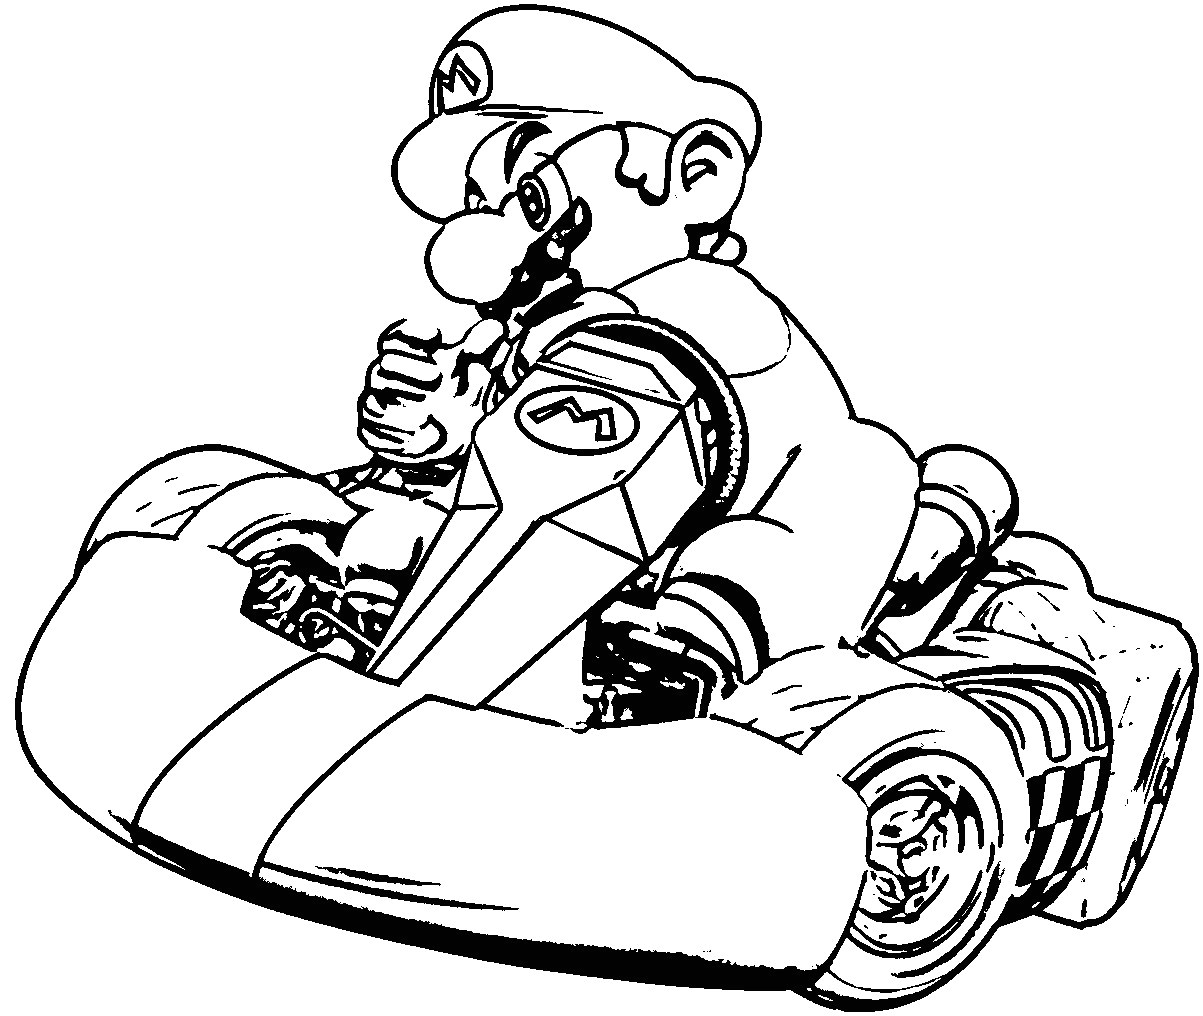 Super Mario Bros Coloring Pages Elegant Super Mario Bros Coloring Pages Free Best Kart Auto Market